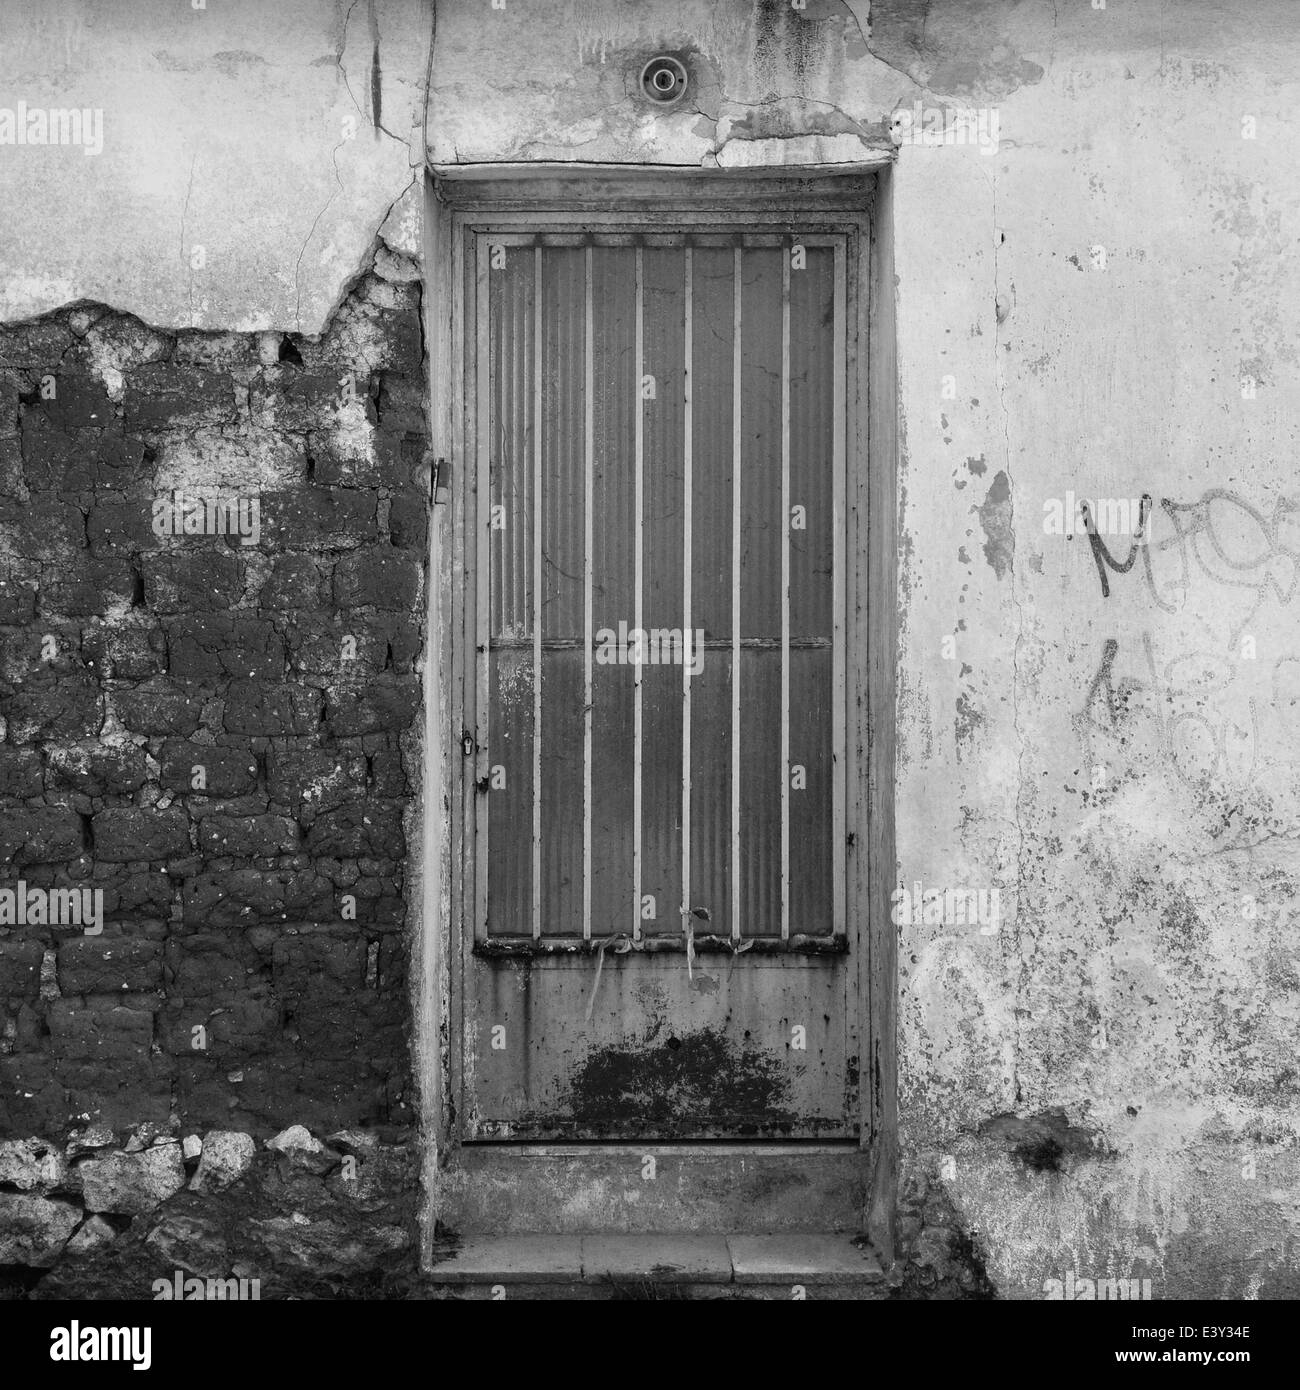 La porte rouillée et cassée texturé mur extérieur de maison abandonnée. Noir et blanc. Banque D'Images